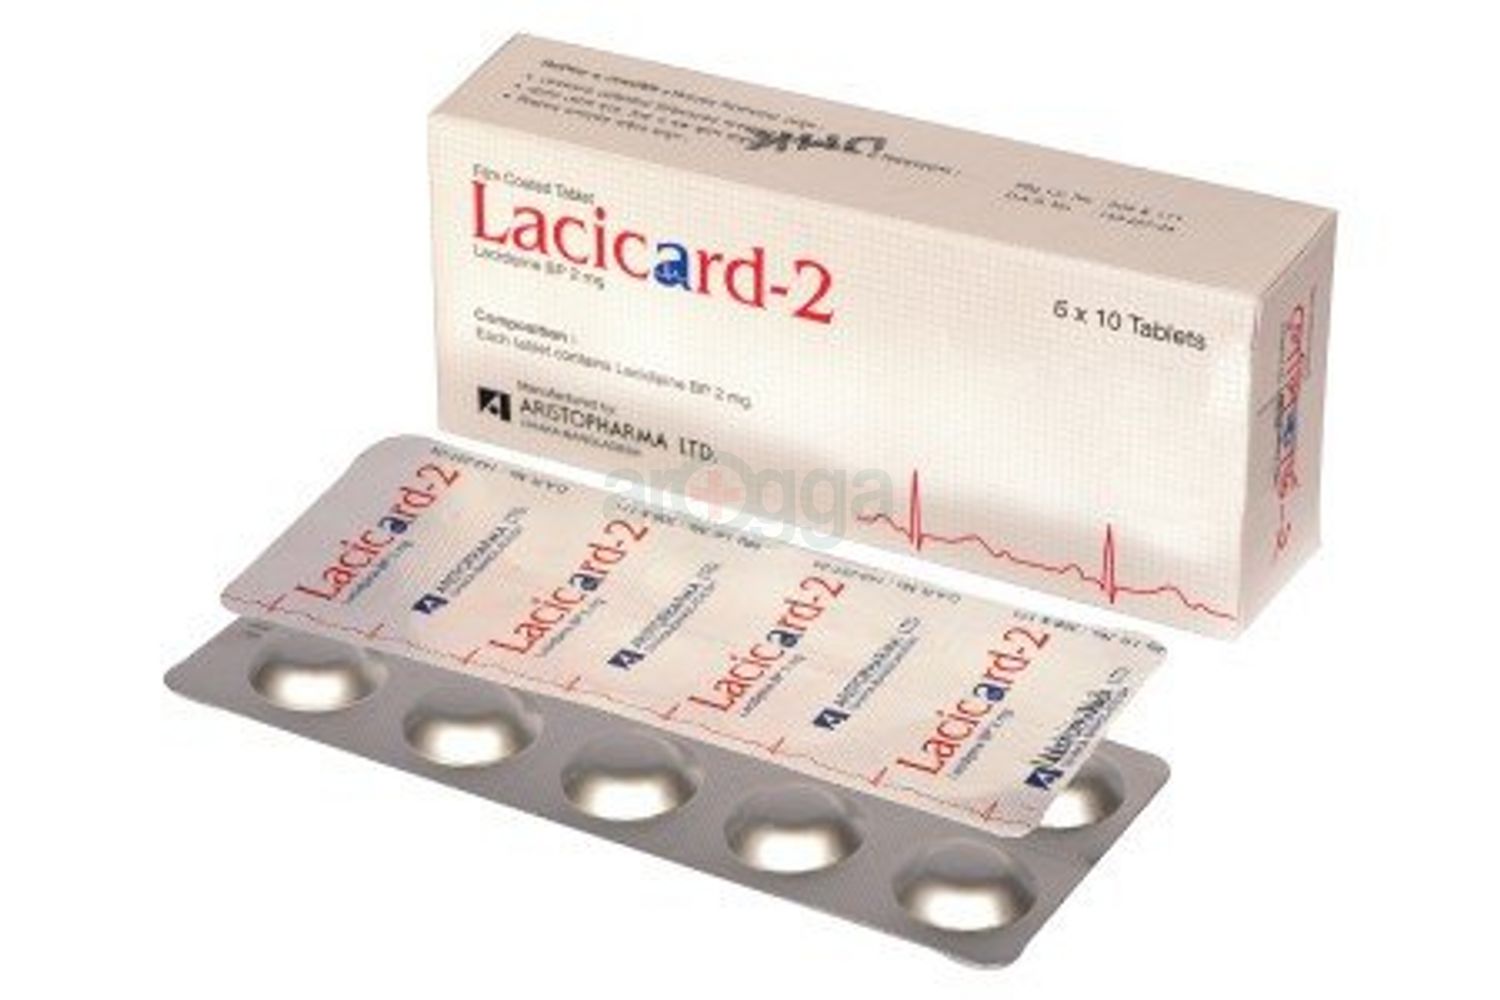 Lacicard 2